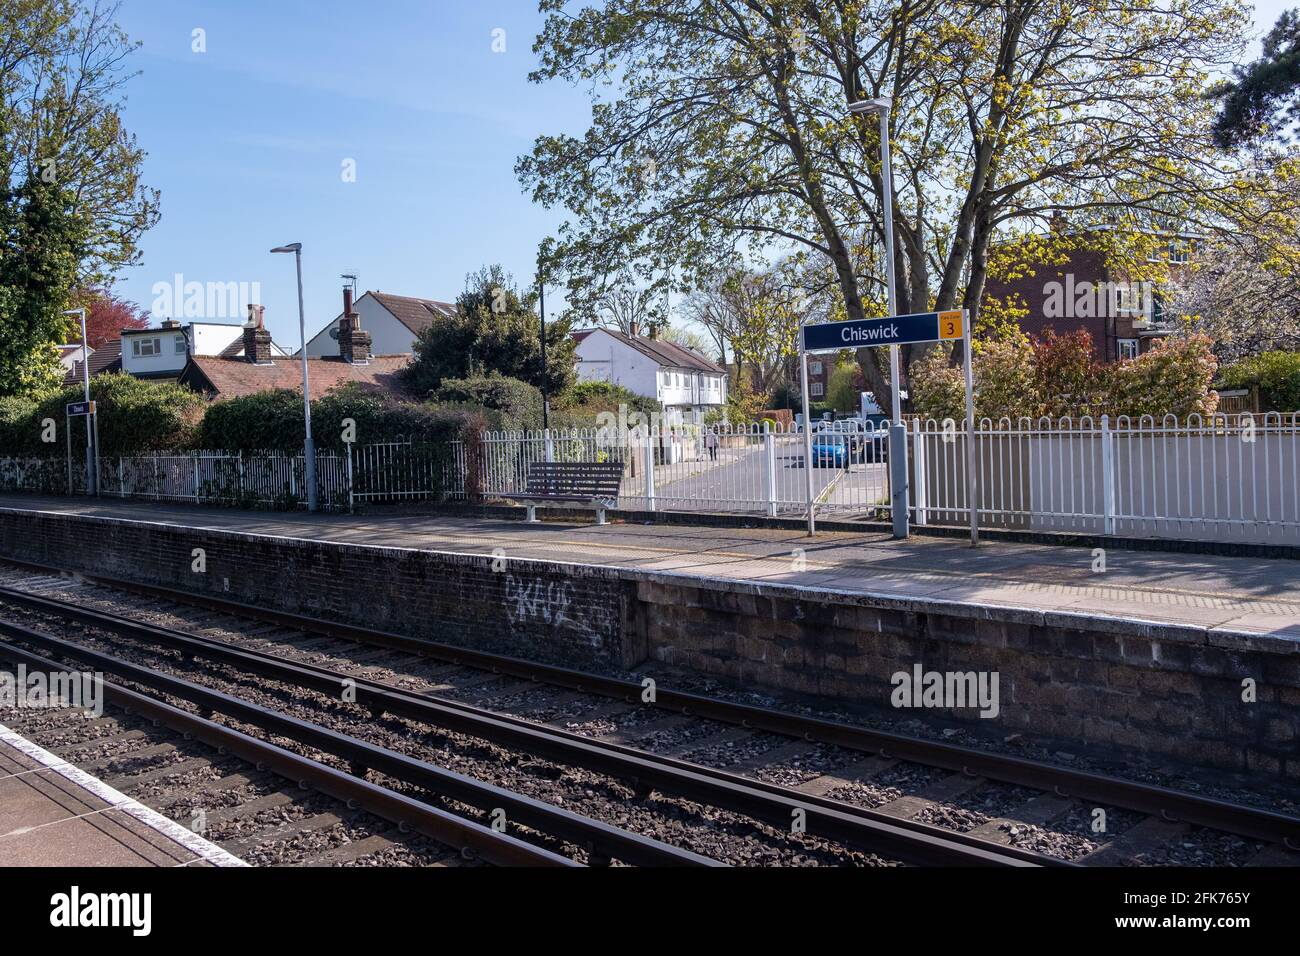 Londra - Aprile 2021: Cartello della Stazione di Chiswick sulla piattaforma, una stazione ferroviaria nella parte ovest di Londra Foto Stock